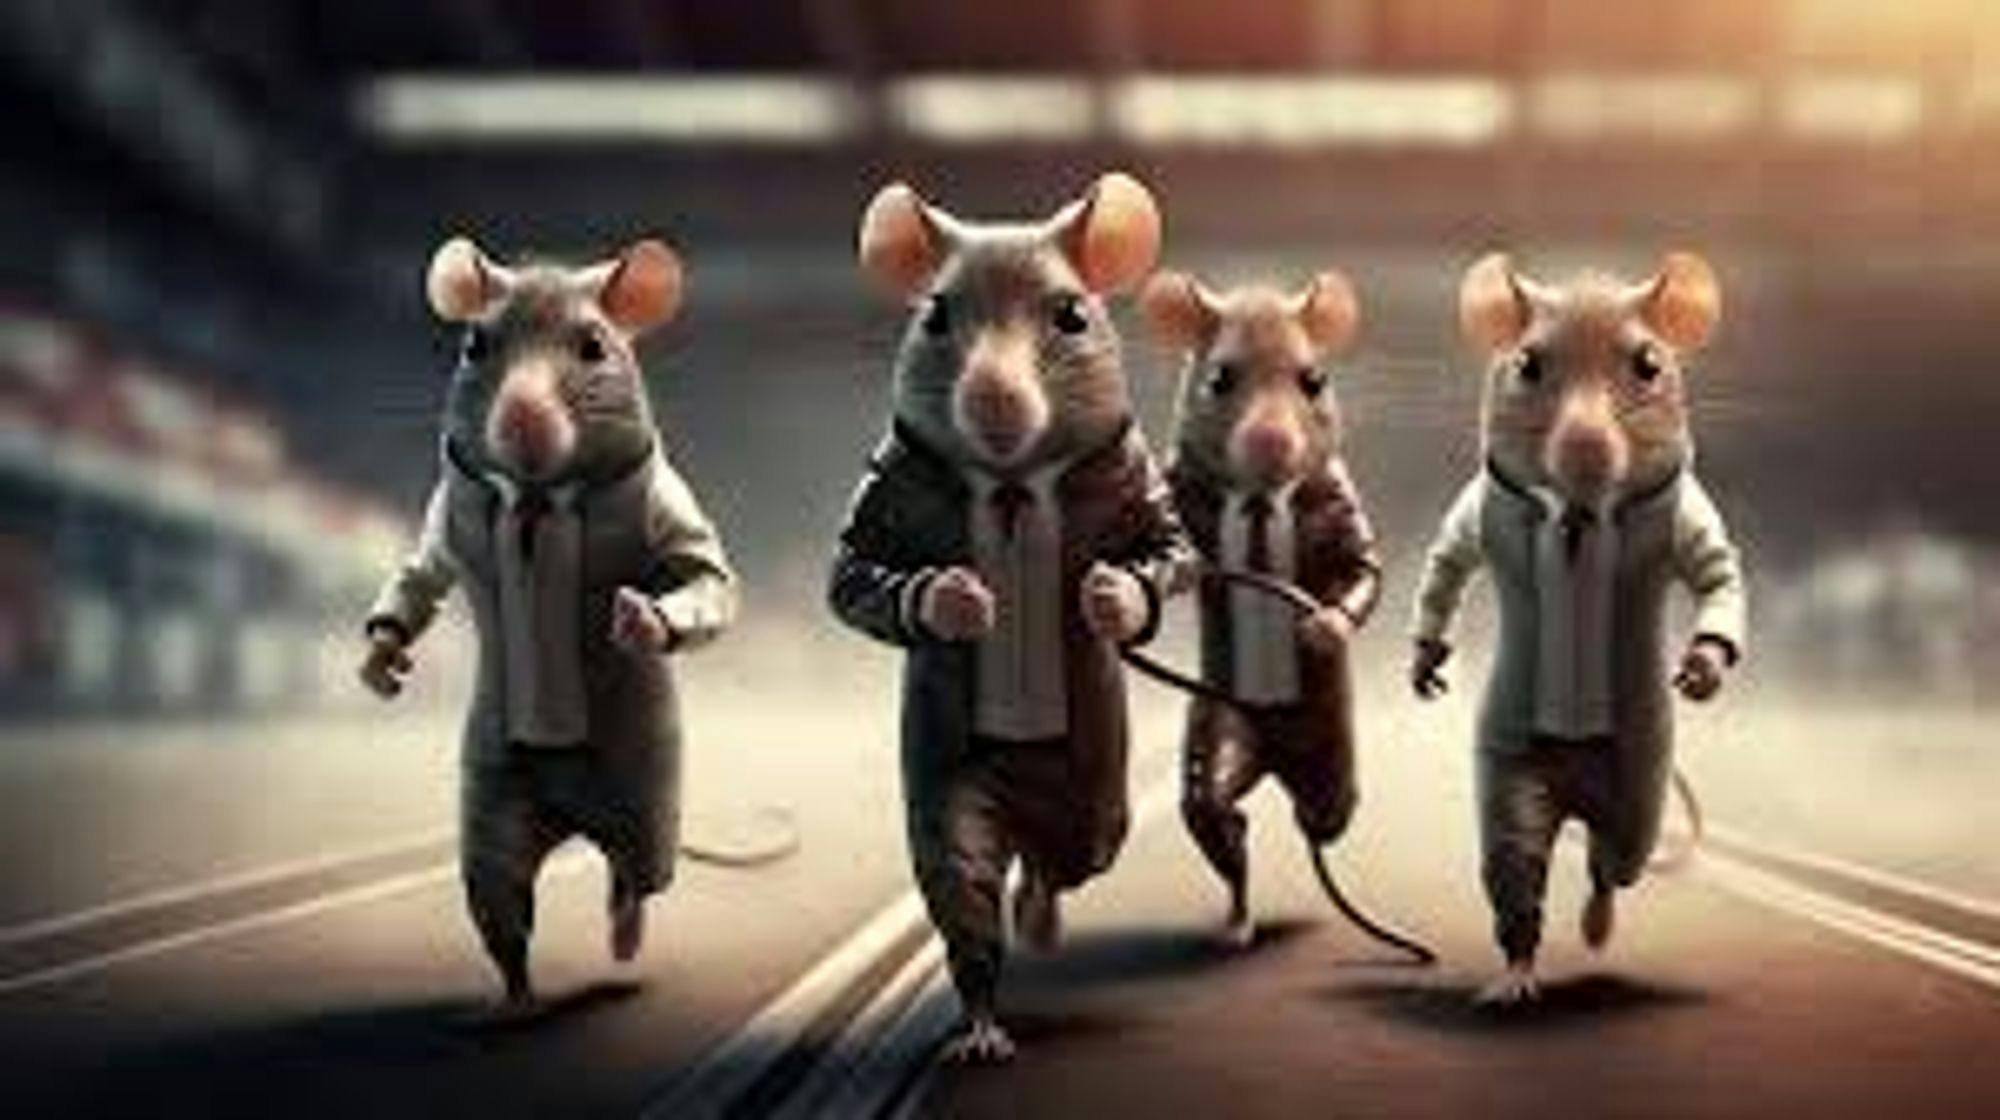 Escape the rat race